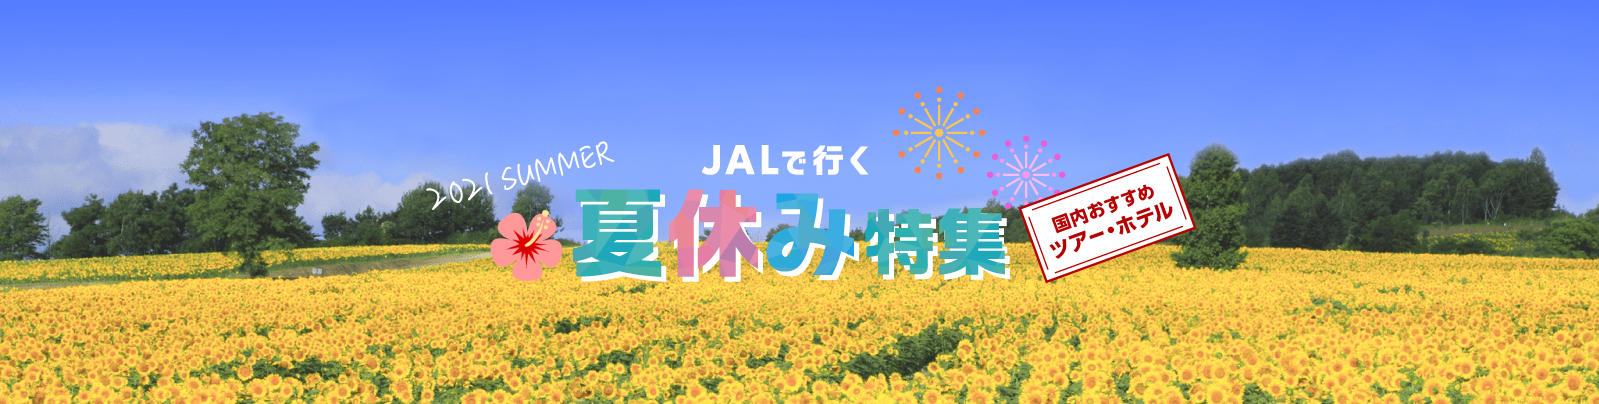 JAL国内ツアー-JALで行く-夏休み特集-国内ツアー・旅行ならJALパック